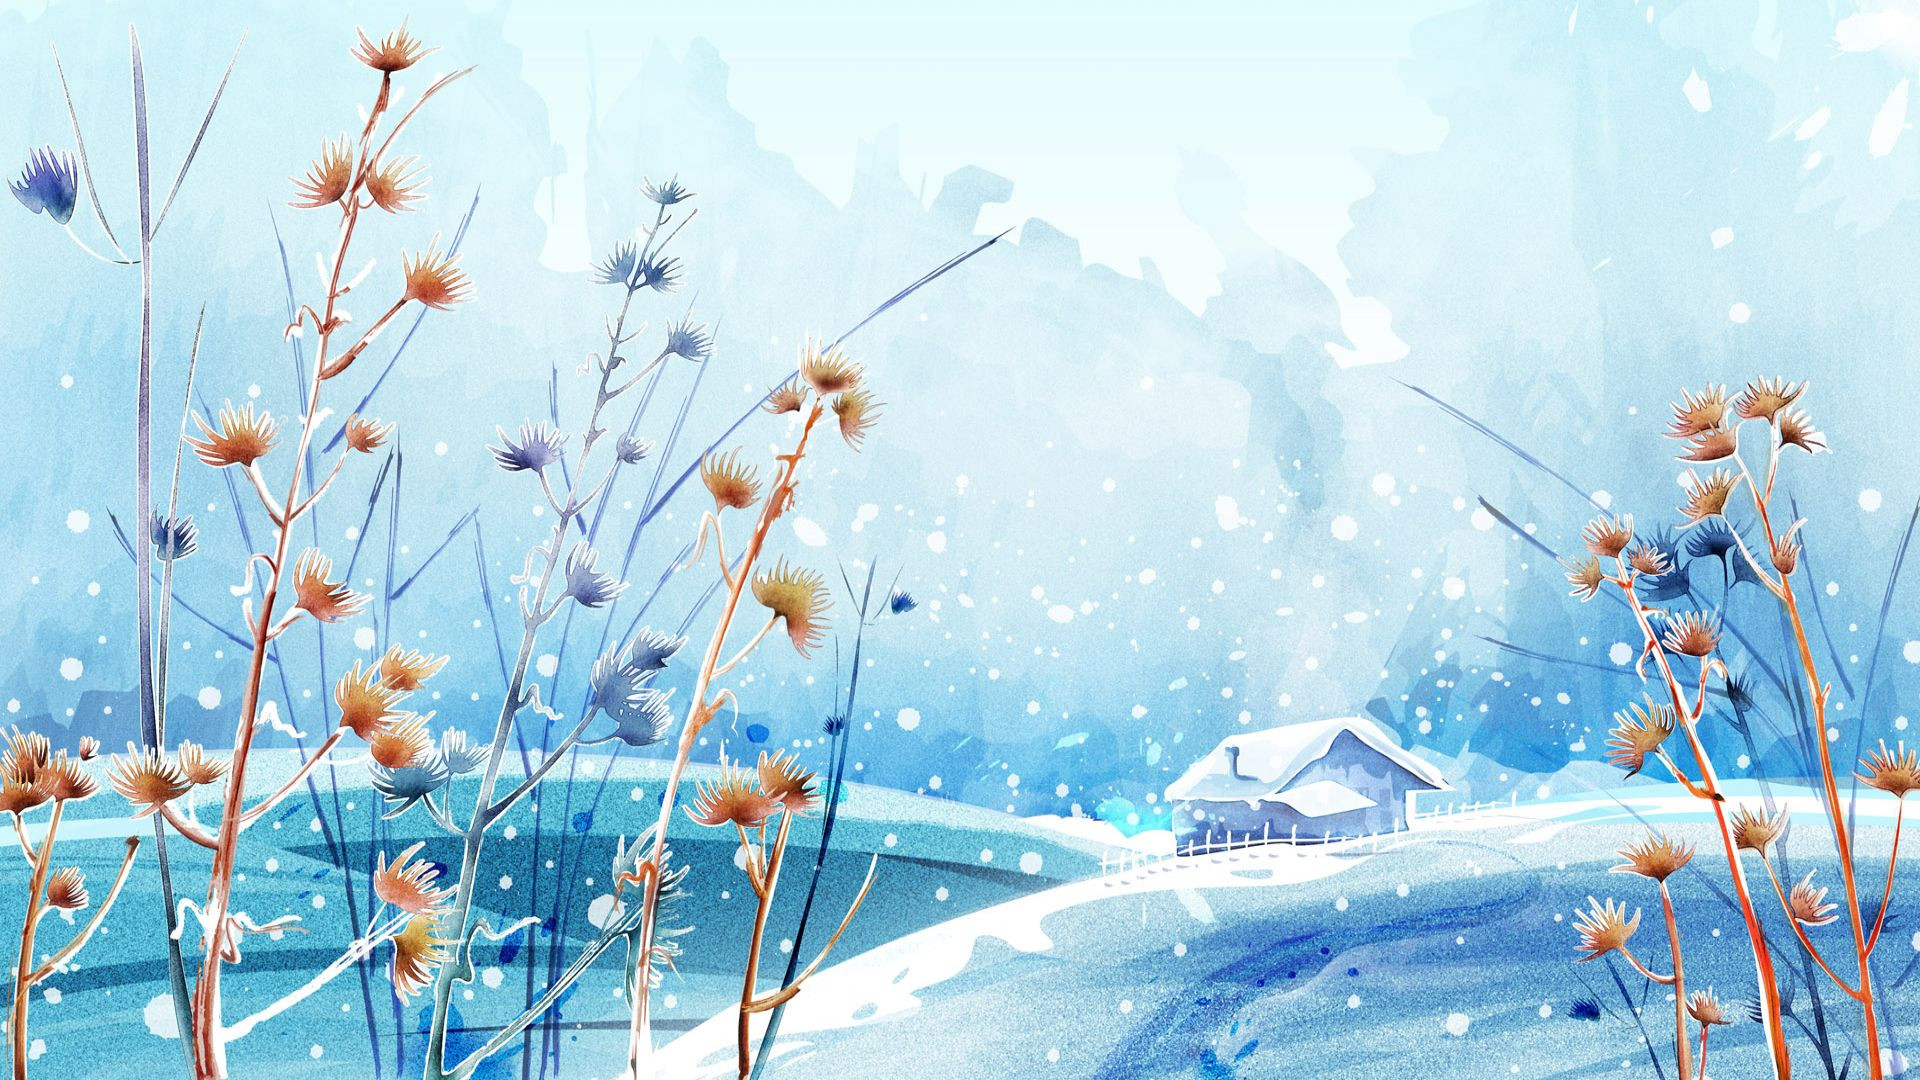 Beautiful Winter Wallpaper For Desktop Image